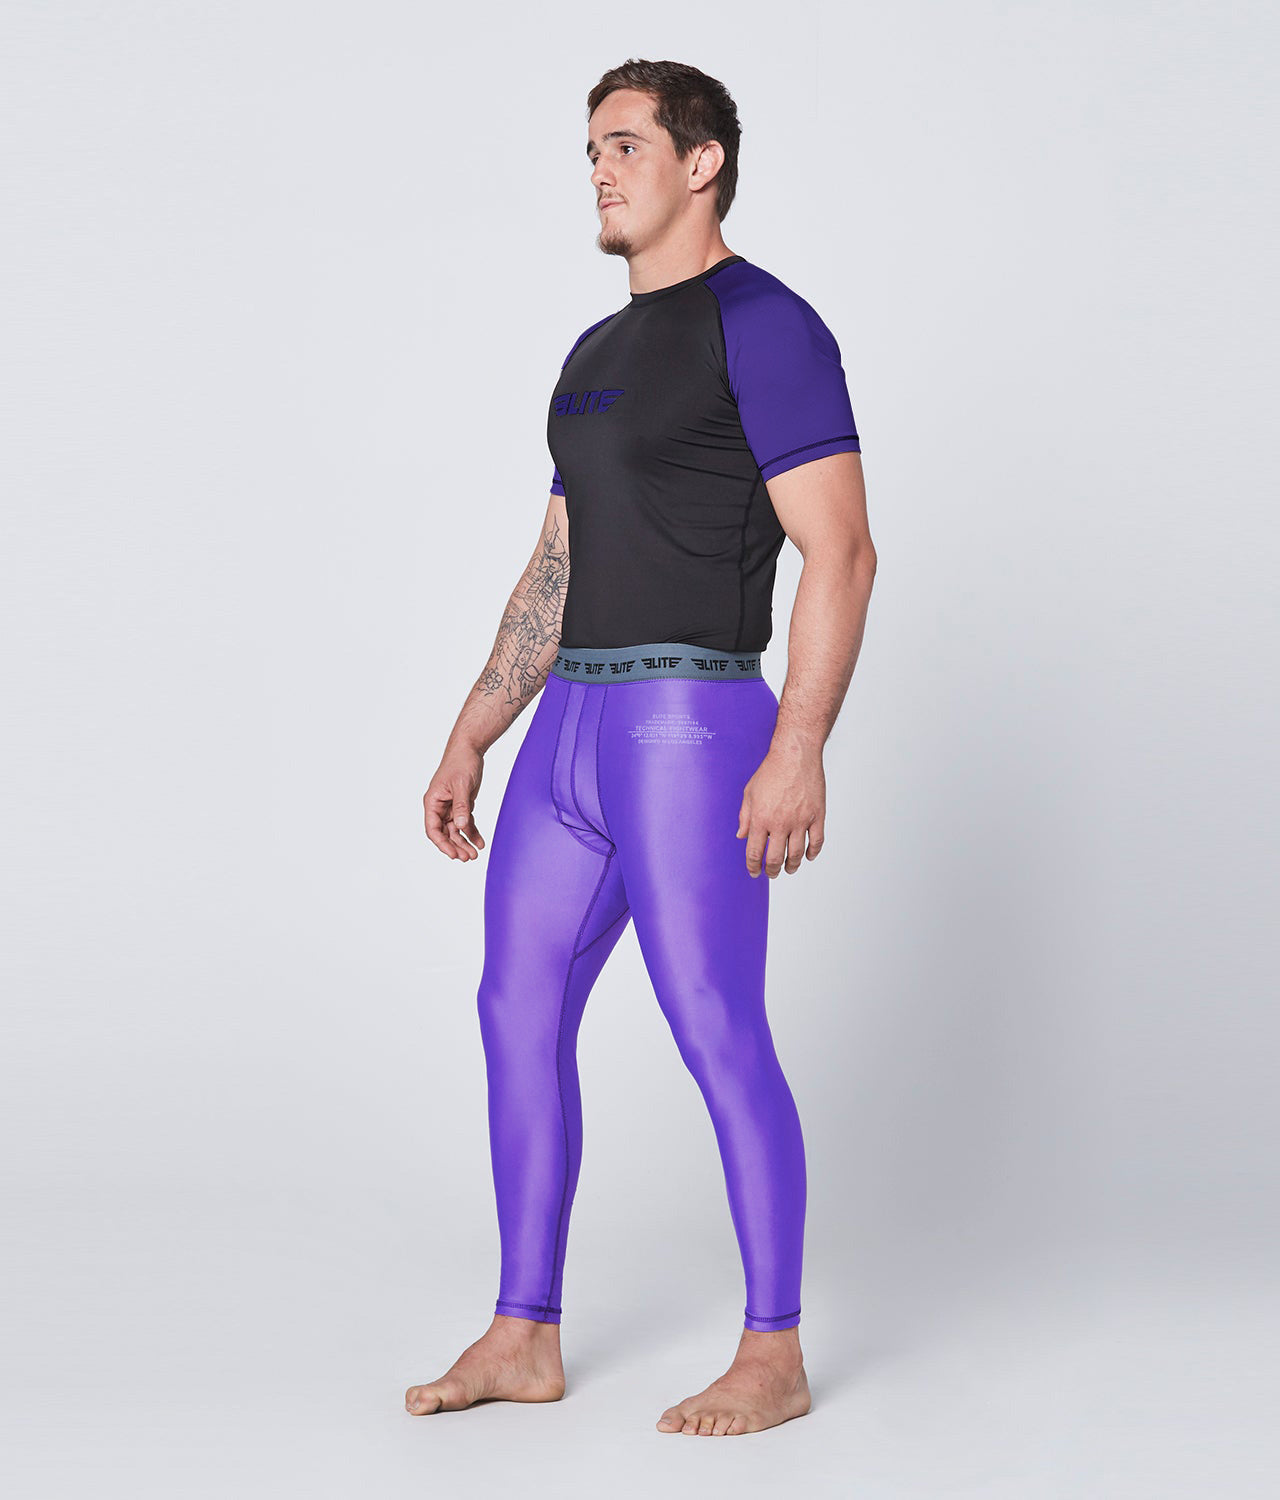 Men's Plain Purple Compression Wrestling Spat Pants